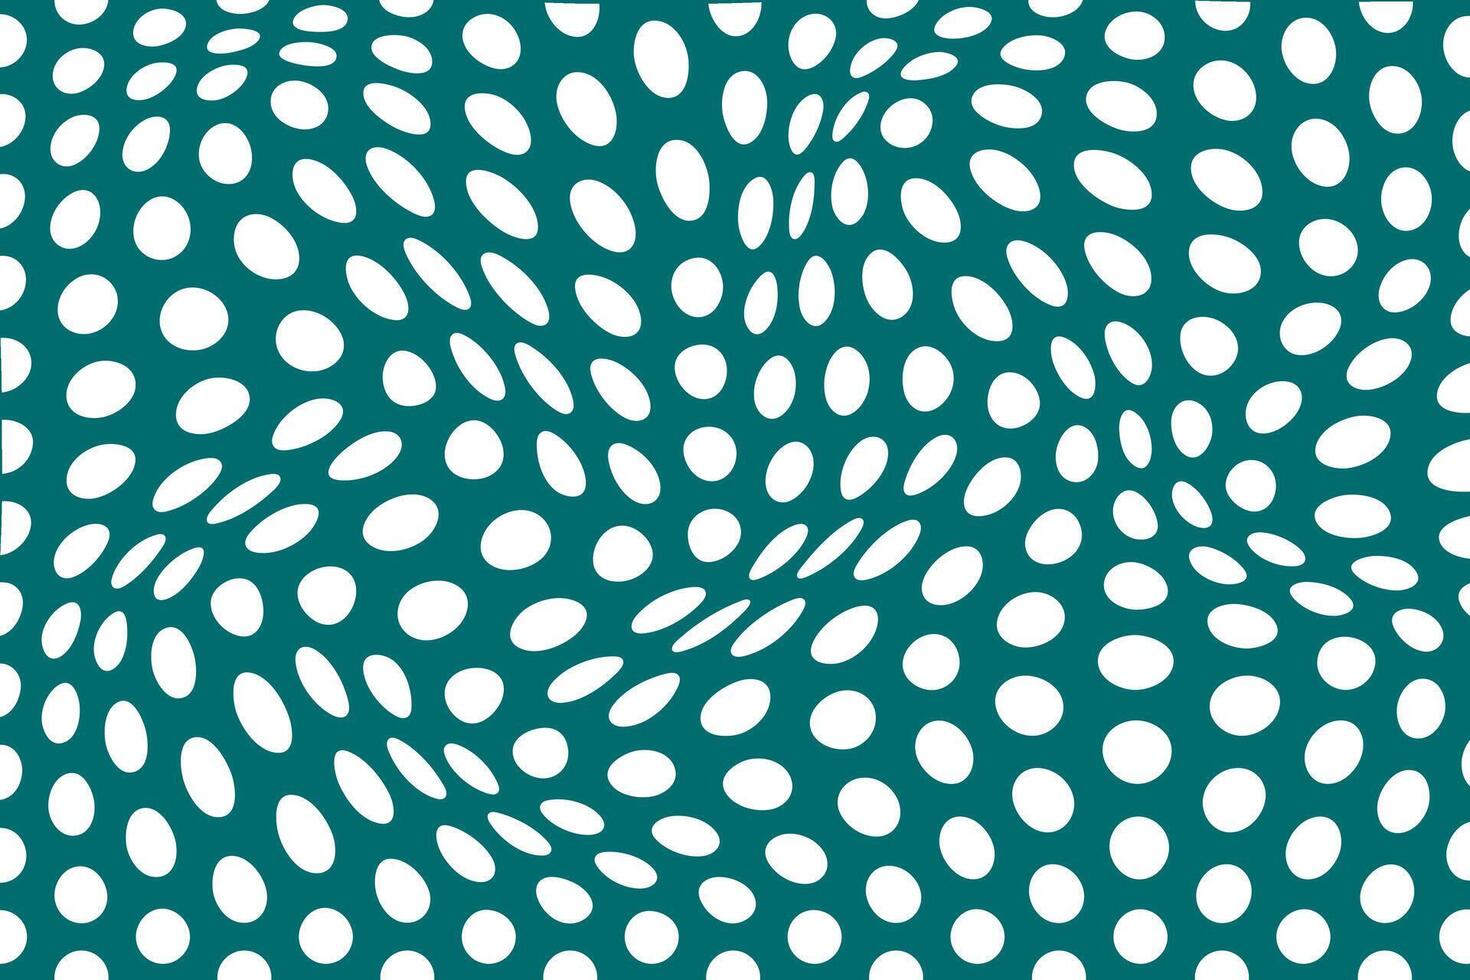 einfach abstrakt Weiß Farbe Polka Punkt wellig Muster auf Meeresgrün Farbe Hintergrund Weiß Punkte im ein Grün Hintergrund vektor